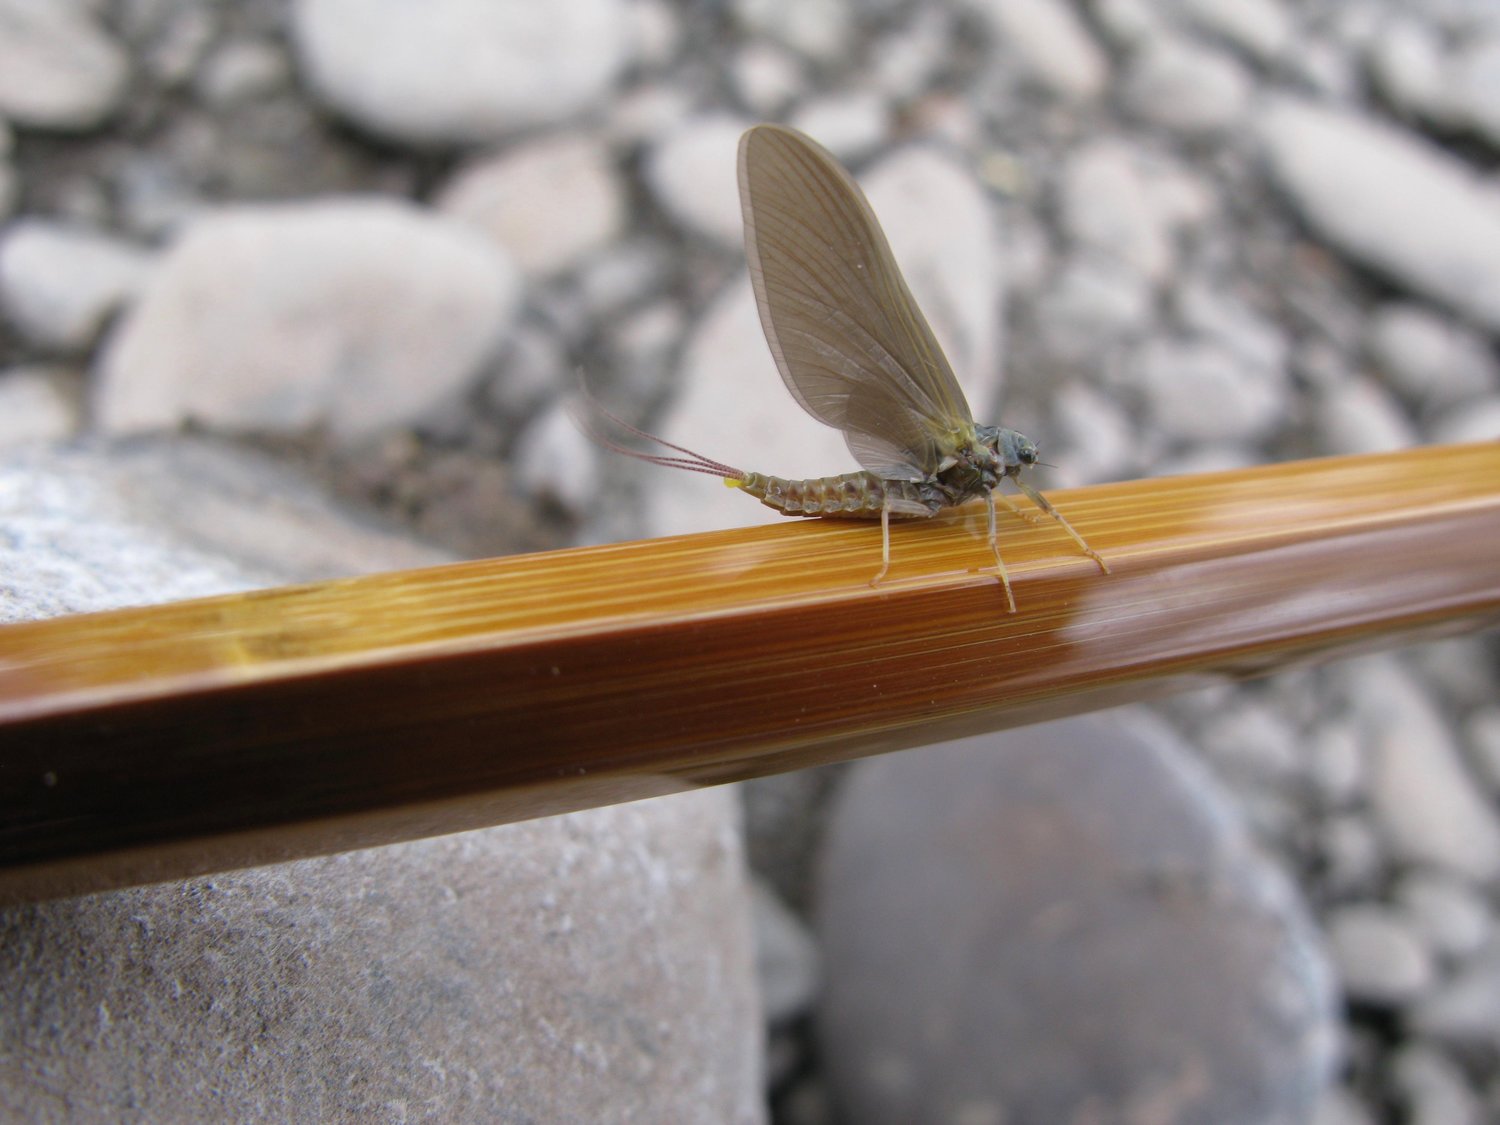 The Hendrickson mayfly, female of E. subvaria.